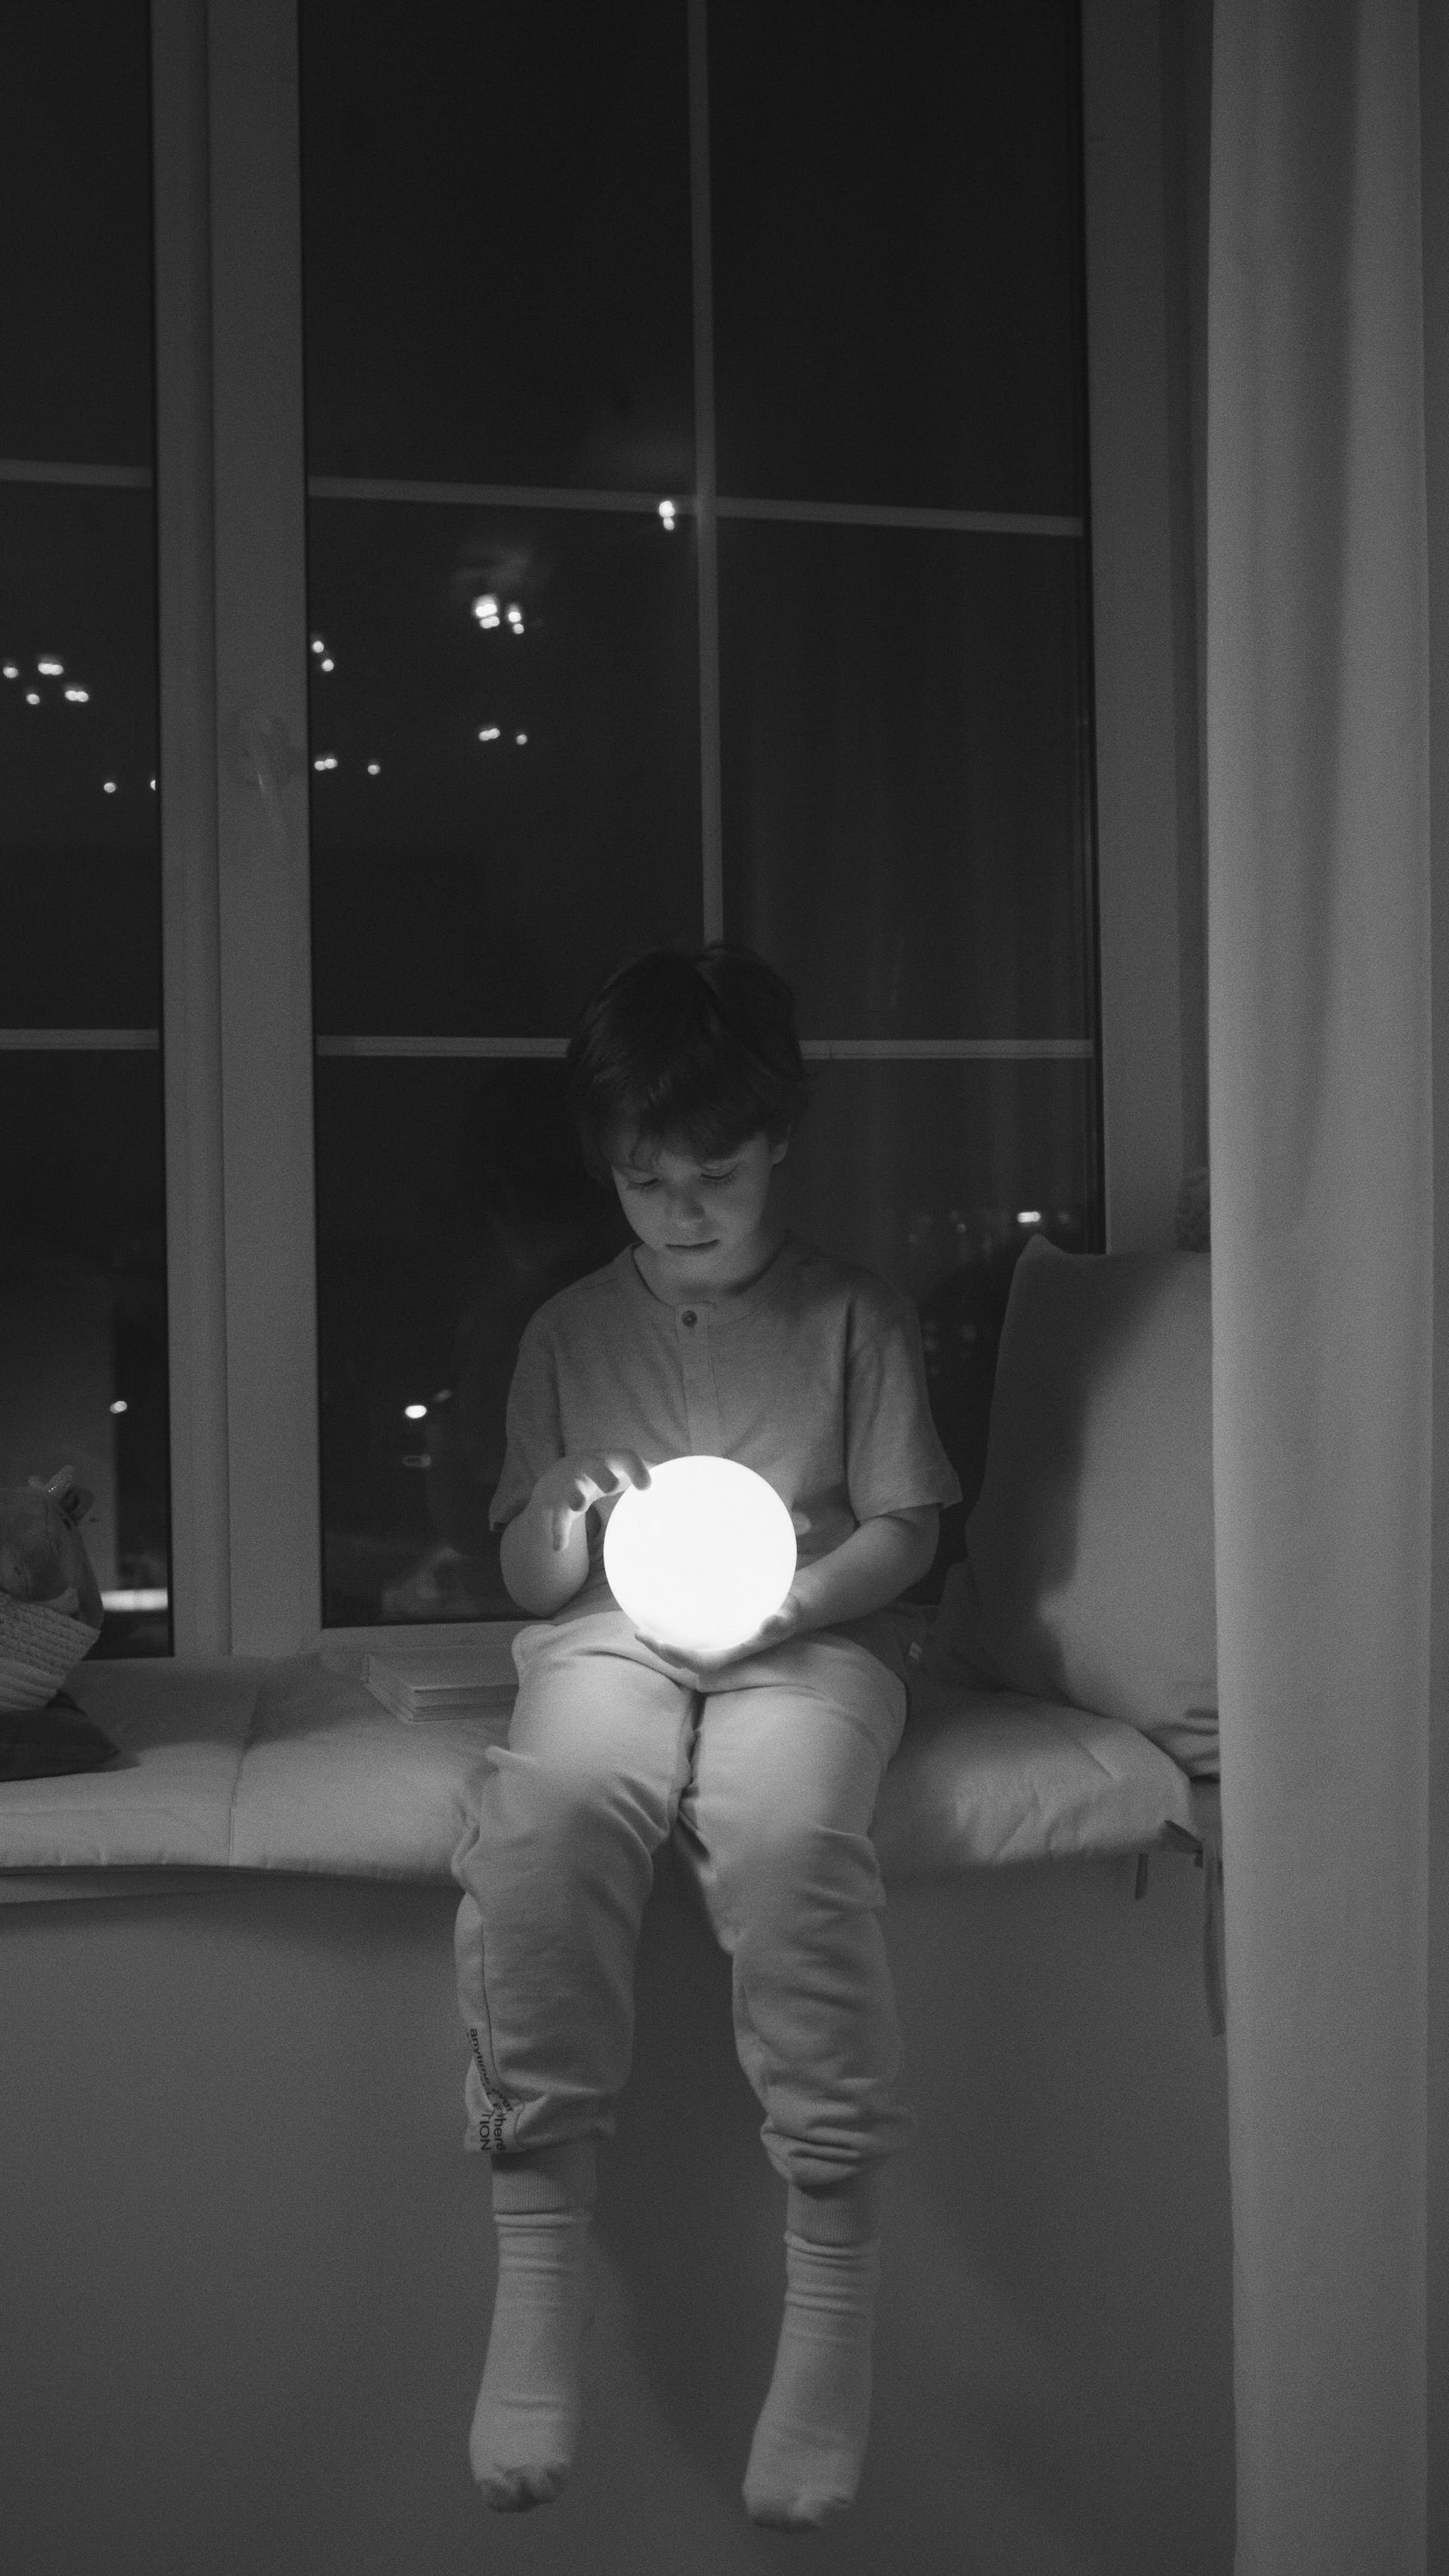 Un garçon tenant une boule de lumière | Source : Pexels